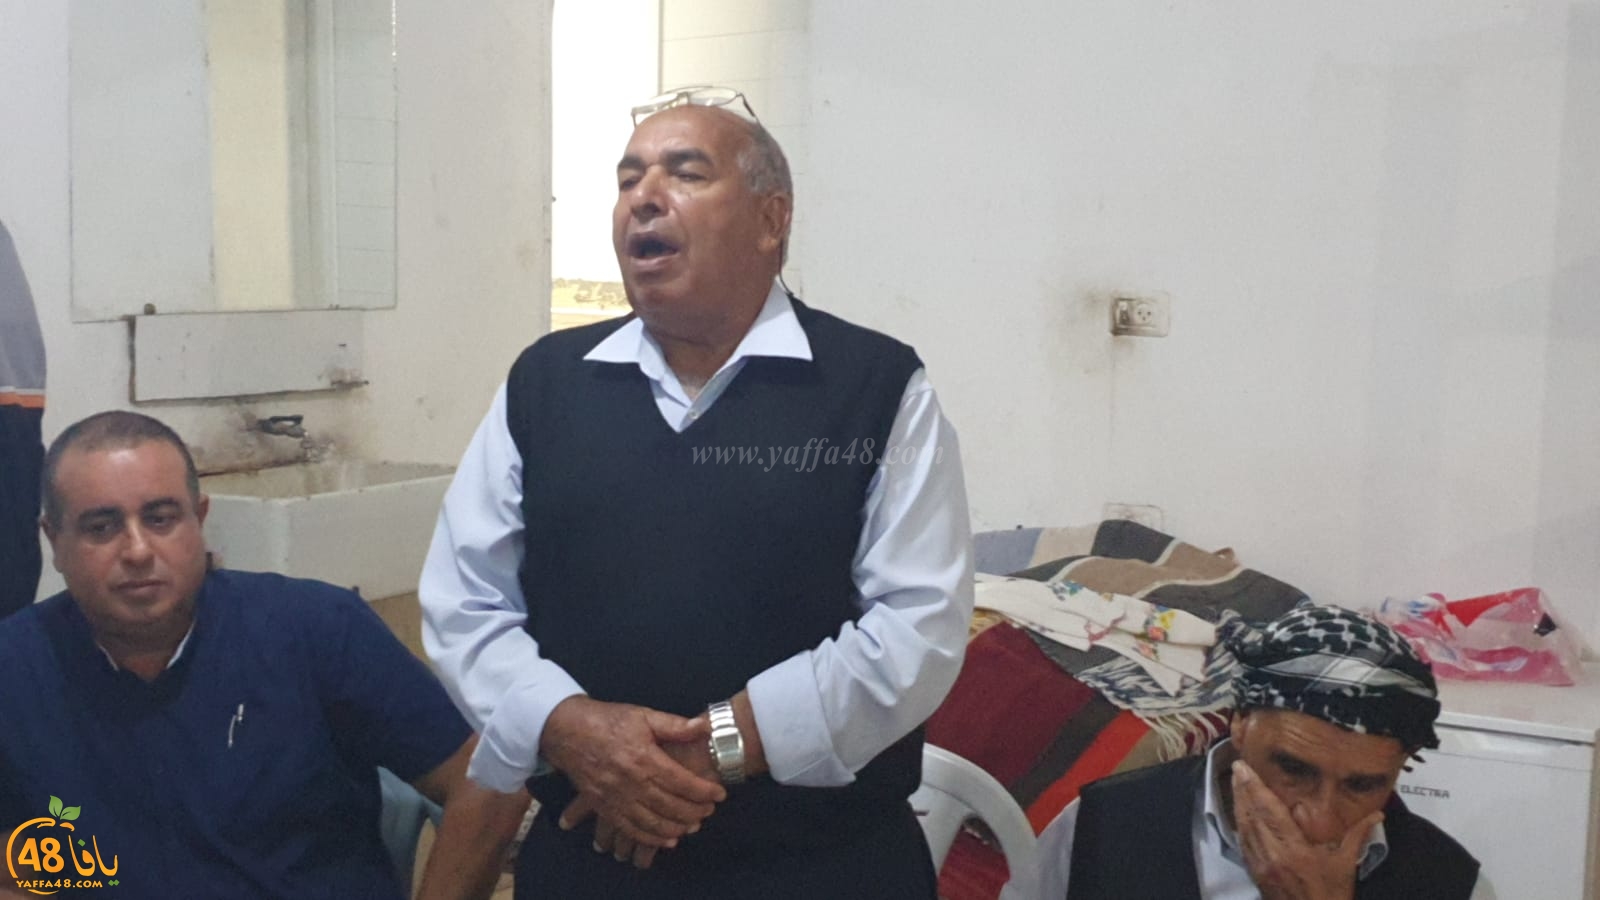 فيديو: عقد راية الصلح بين عائلتي مصراتي وأبو فرج من اللد